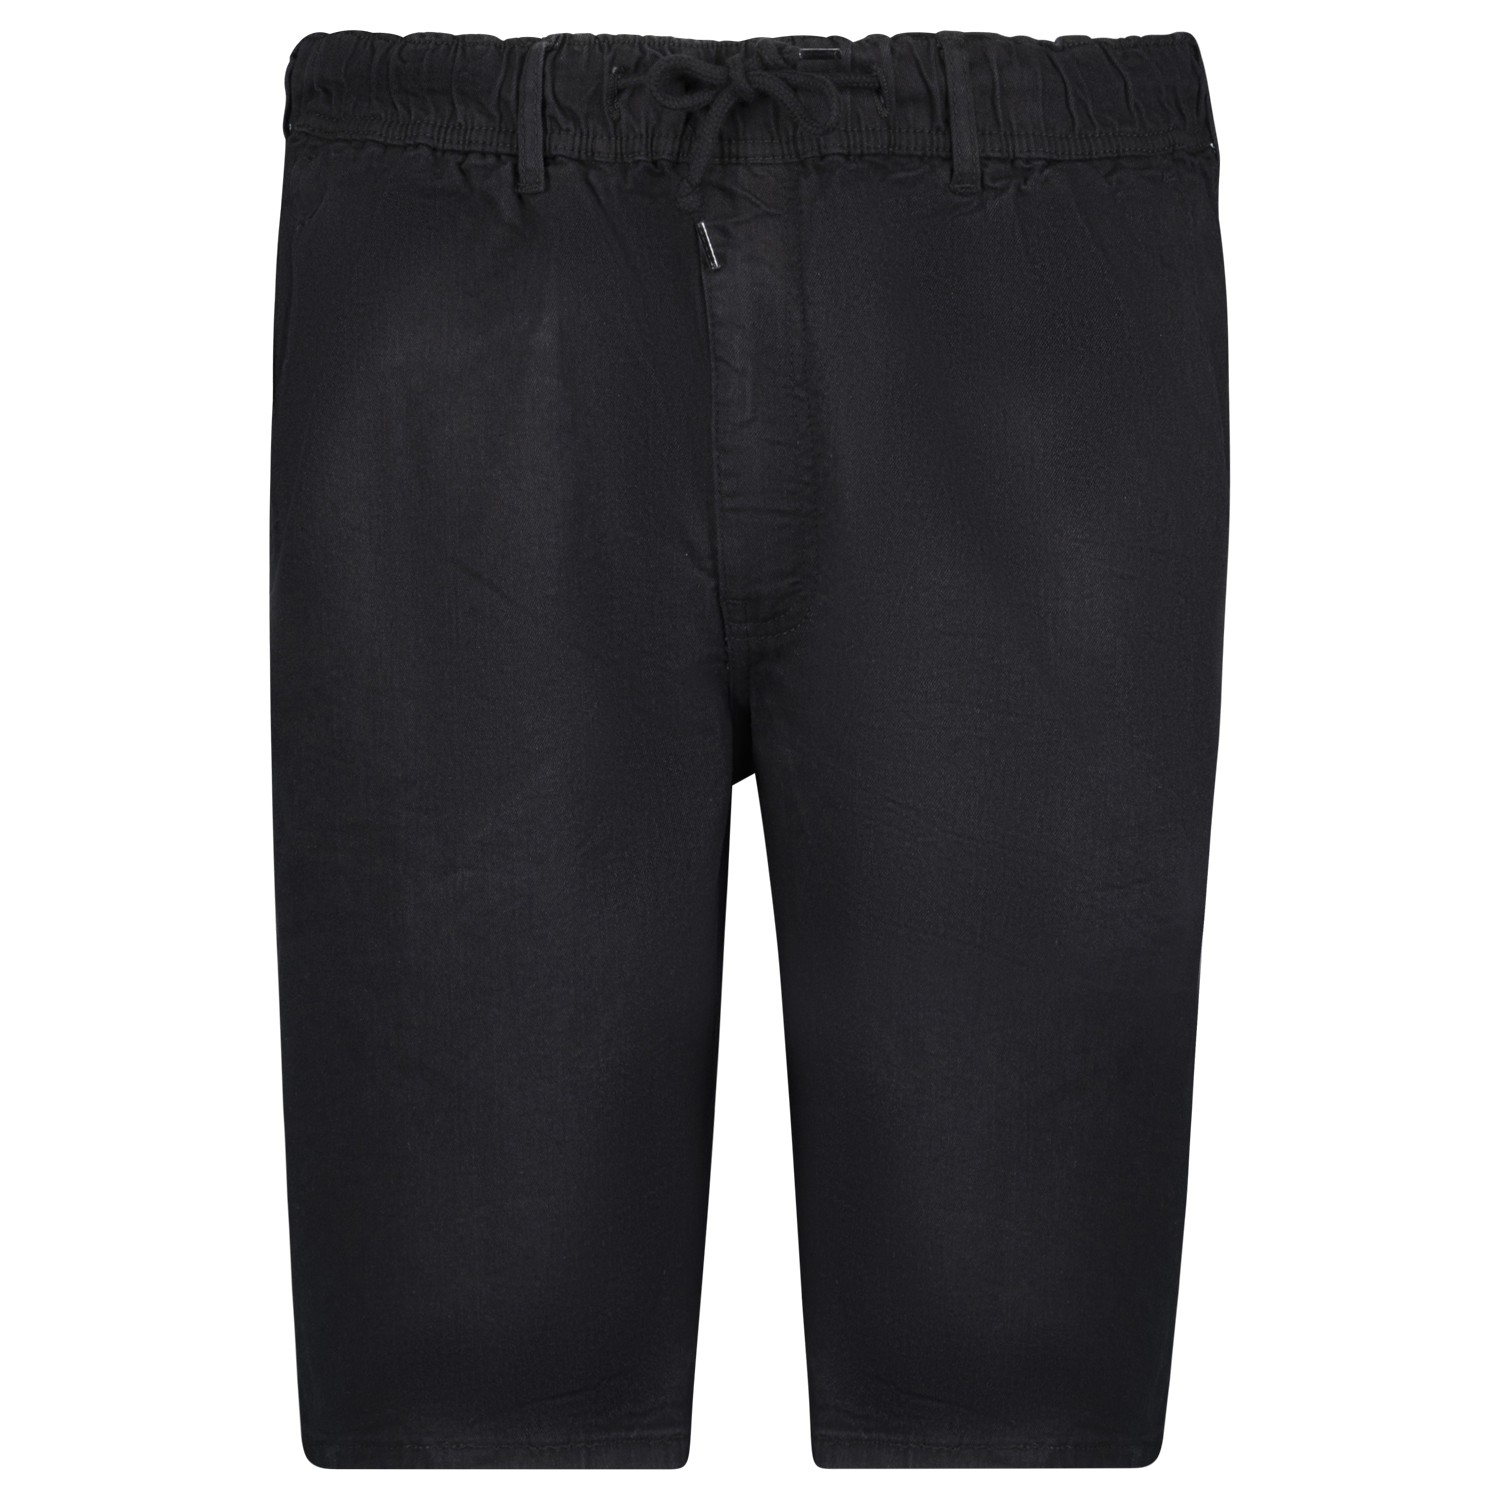 Jogging jeans short "KANSAS" noir by Adamo grandes tailles jusqu'au 12XL